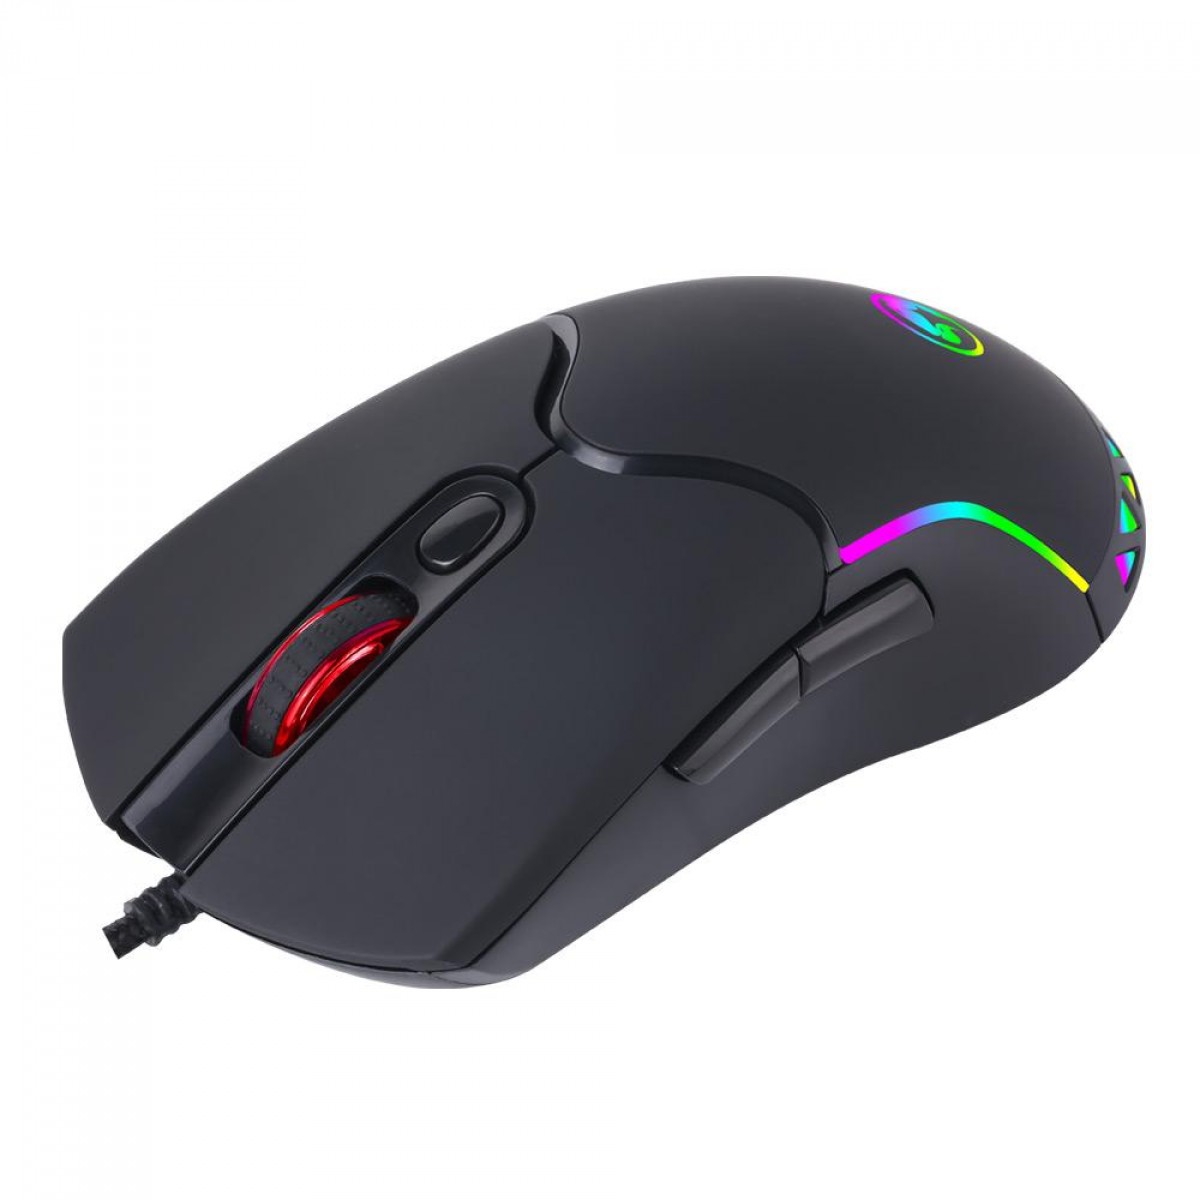 Mouse Gamer Marvo M359, 3200 DPI, 7 Botões, RGB, Black